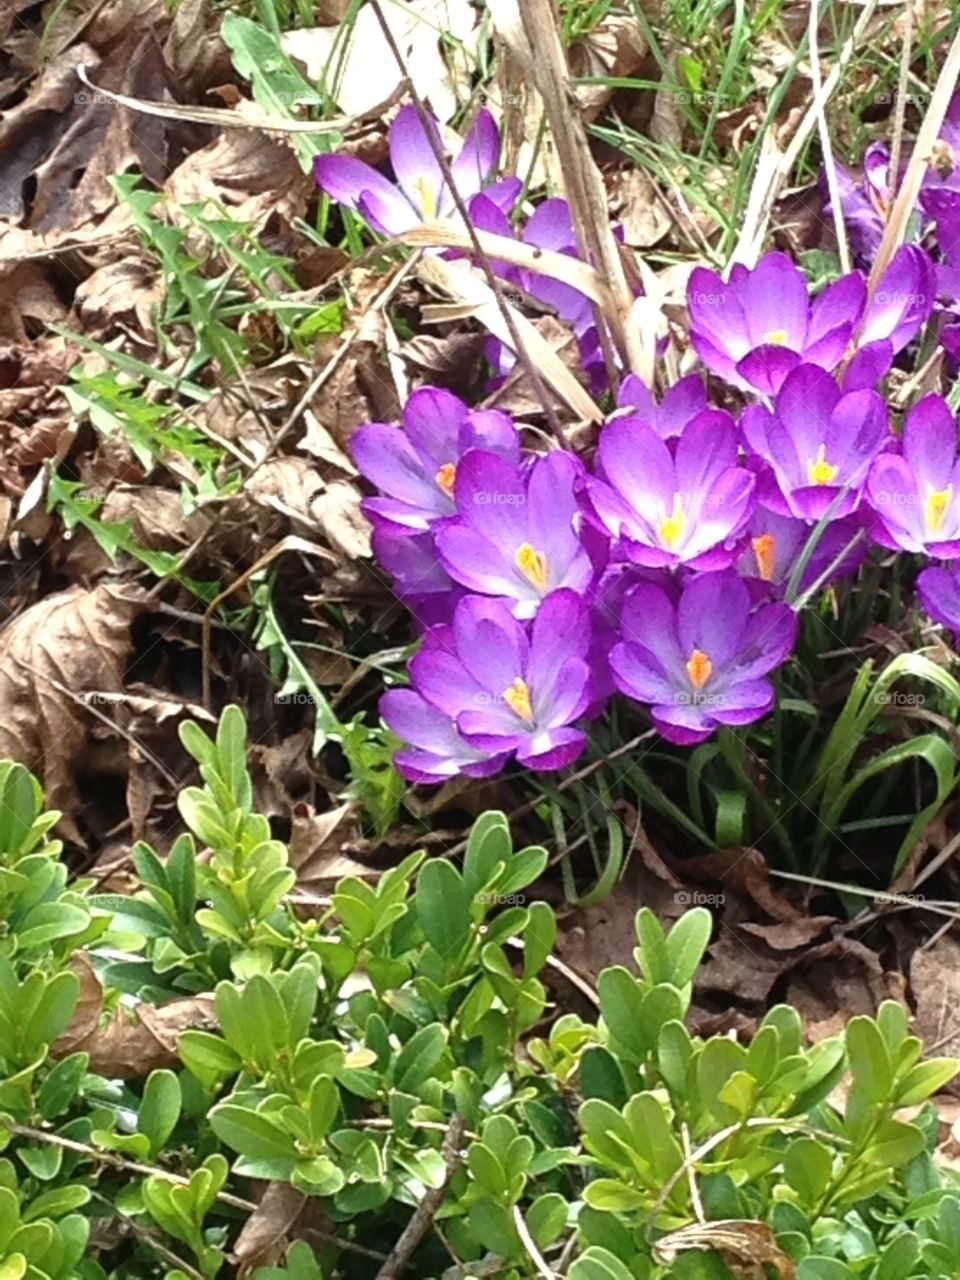 Purple flowers blooming outdoors